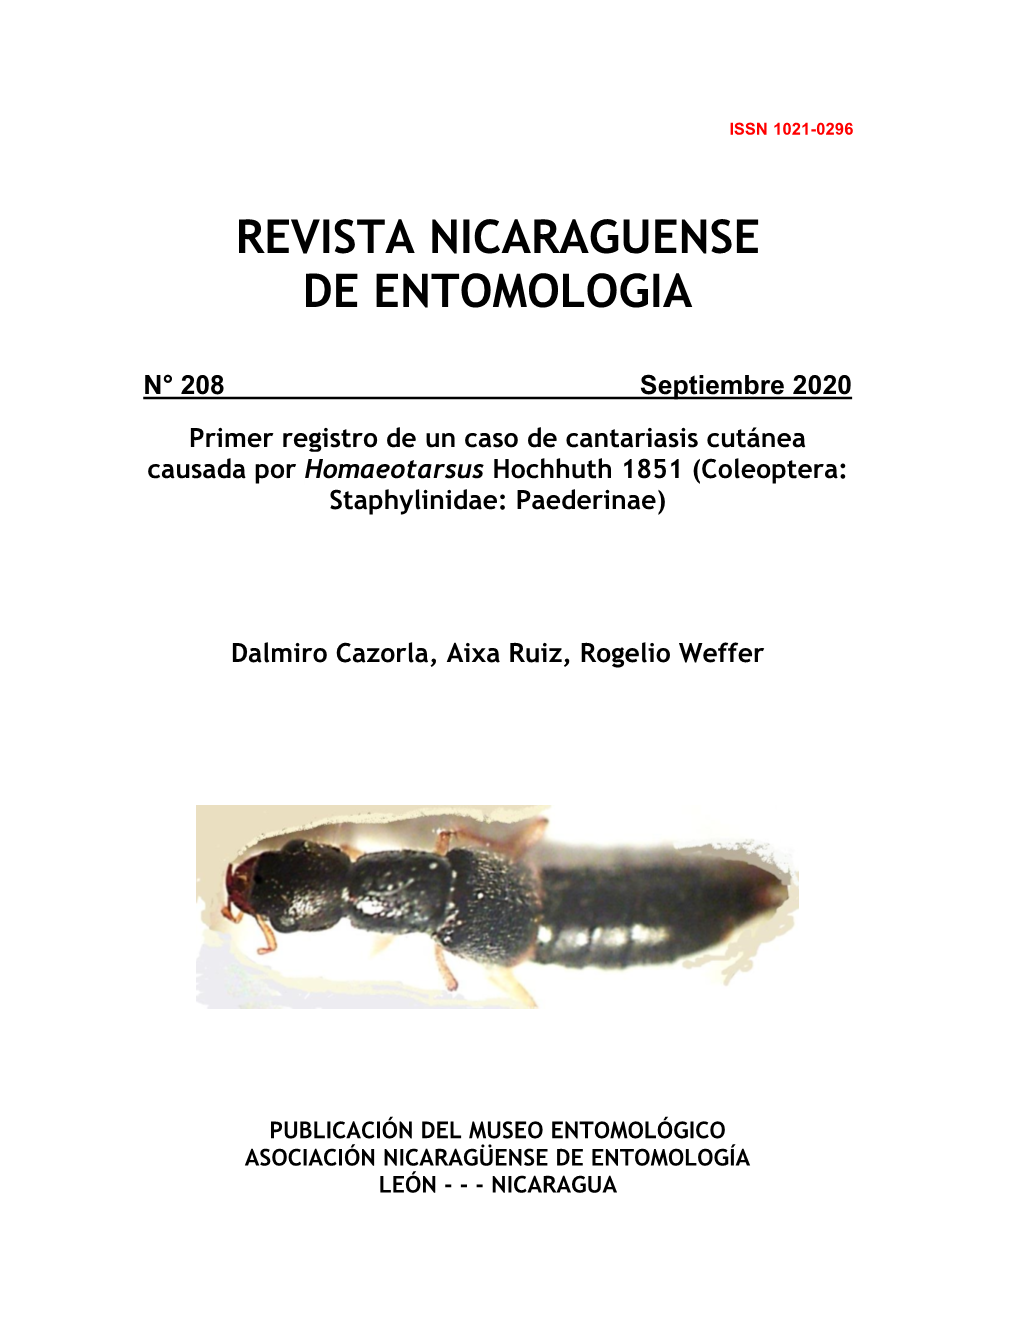 Coleoptera: Staphylinidae: Paederinae)